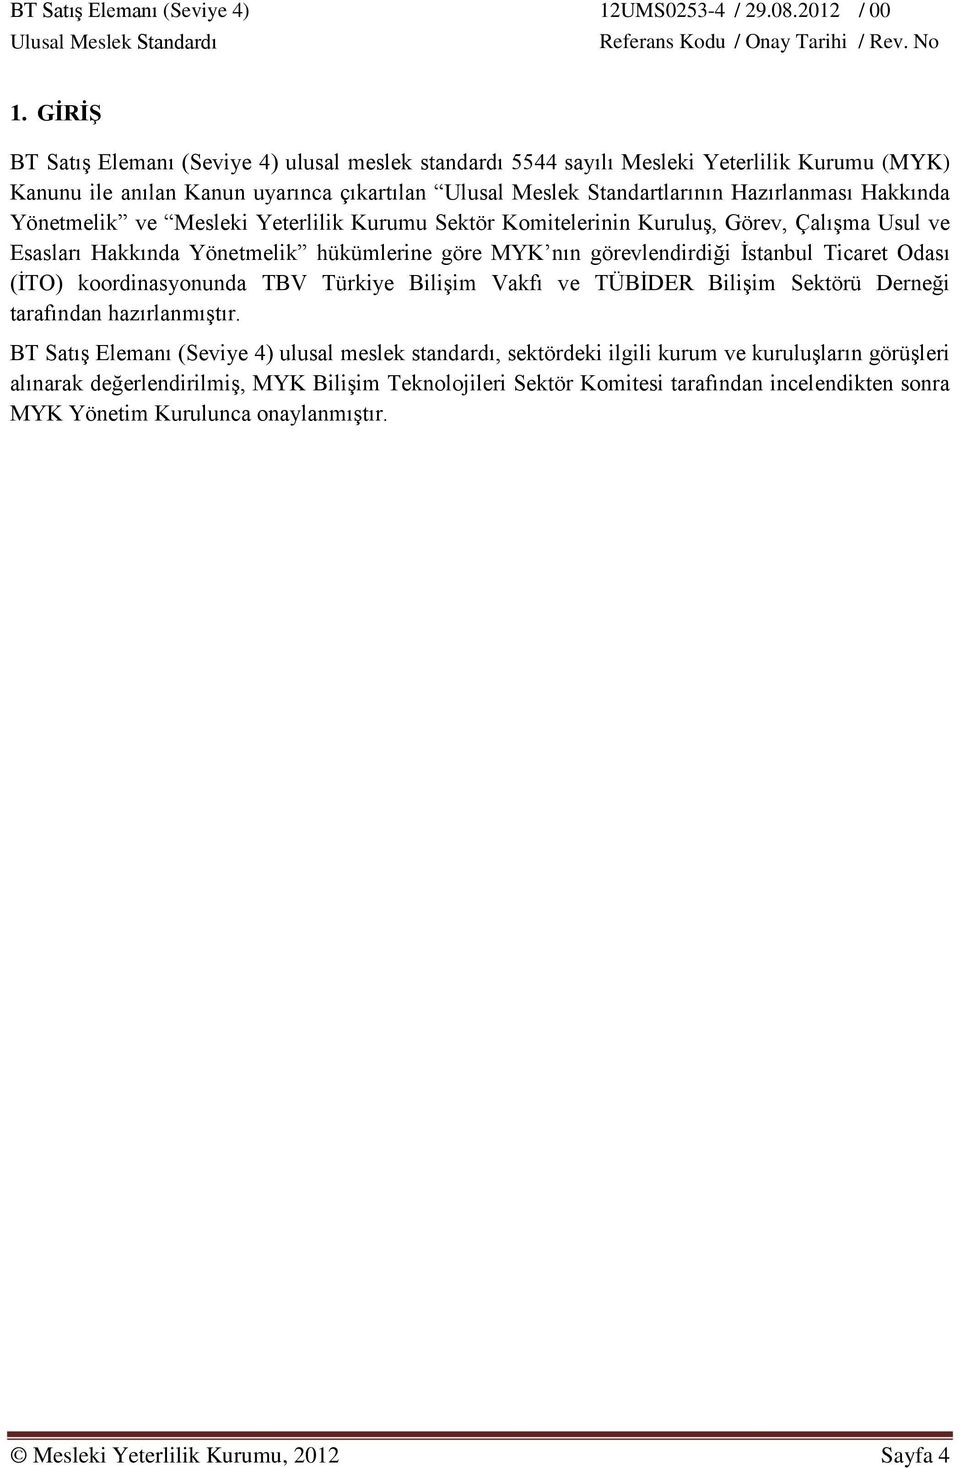 (İTO) koordinasyonunda TBV Türkiye Bilişim Vakfı ve TÜBİDER Bilişim Sektörü Derneği tarafından hazırlanmıştır.